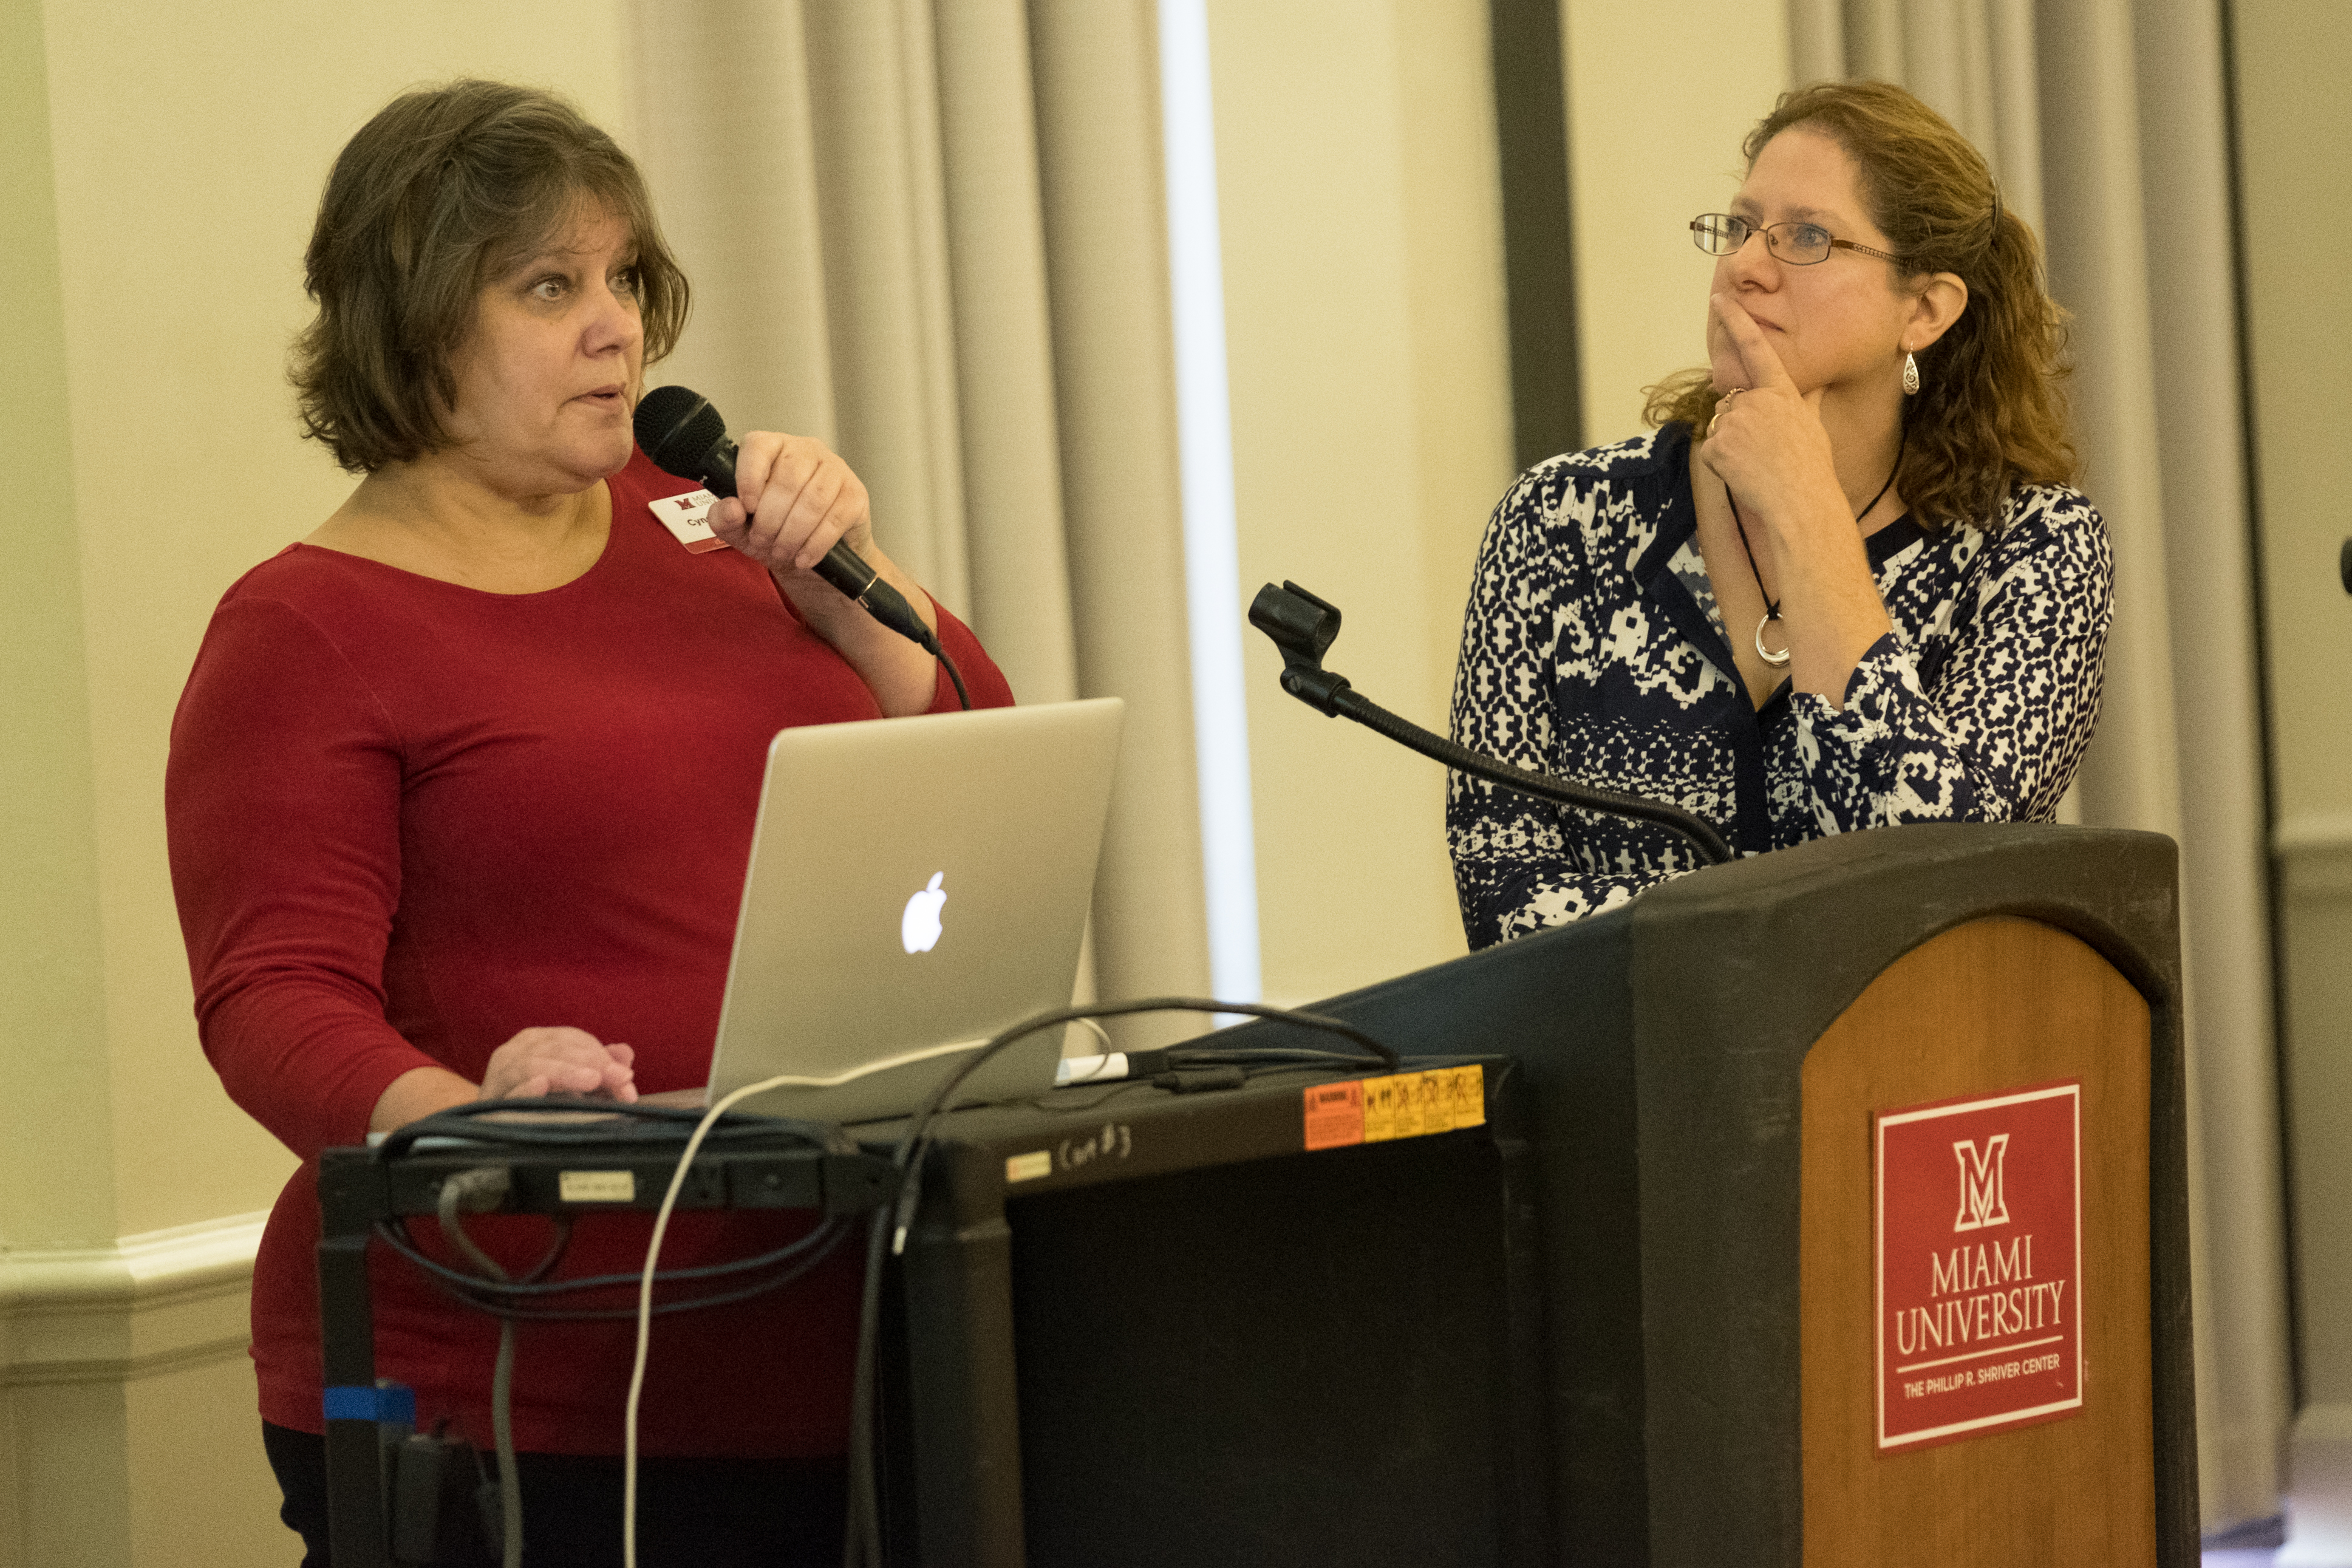 Cyndi Govreau and Elizabeth Farrar present at the AT Symposium.